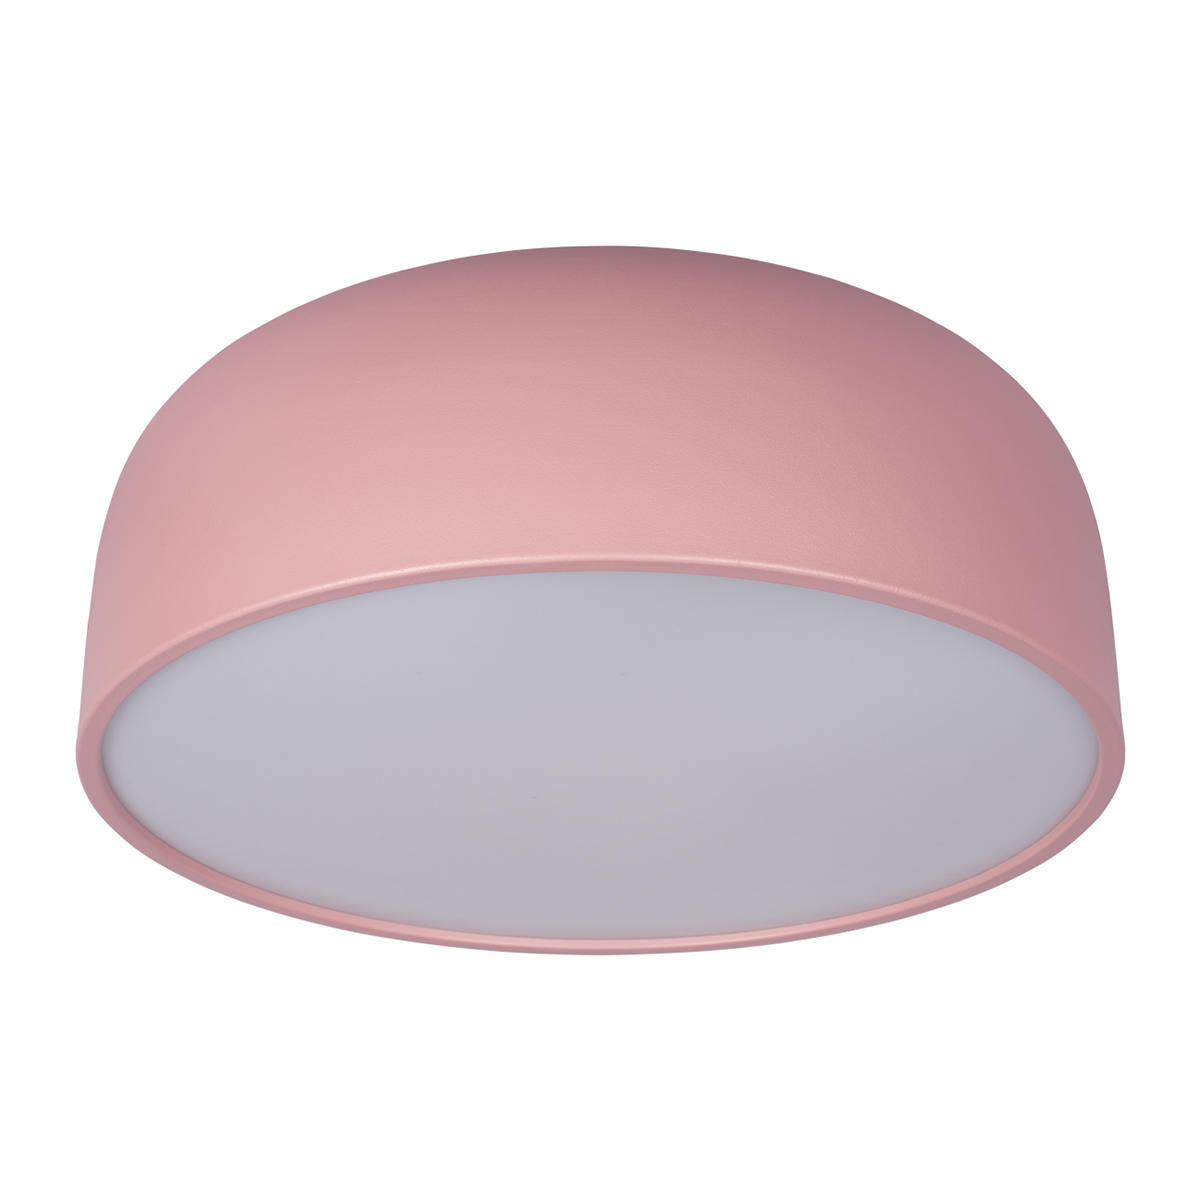 Потолочный накладной розовый светильник Loft It Axel 10201/480 Pink